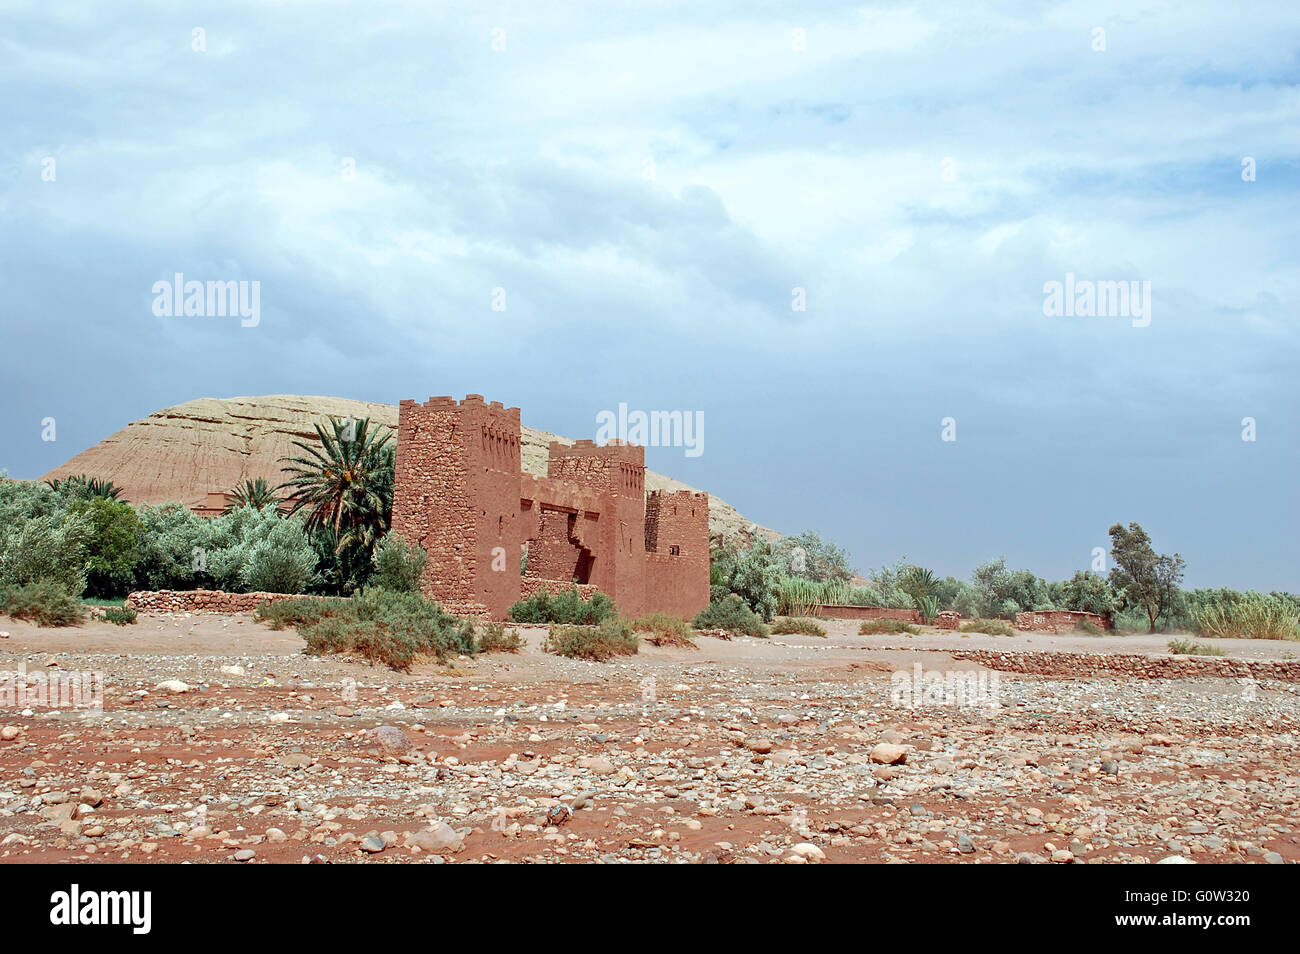 La Kasbah d'Ait Ben Haddou, die Lage in Marokko, wo viele Filme einschließlich Indiana Jones gedreht wurden Stockfoto